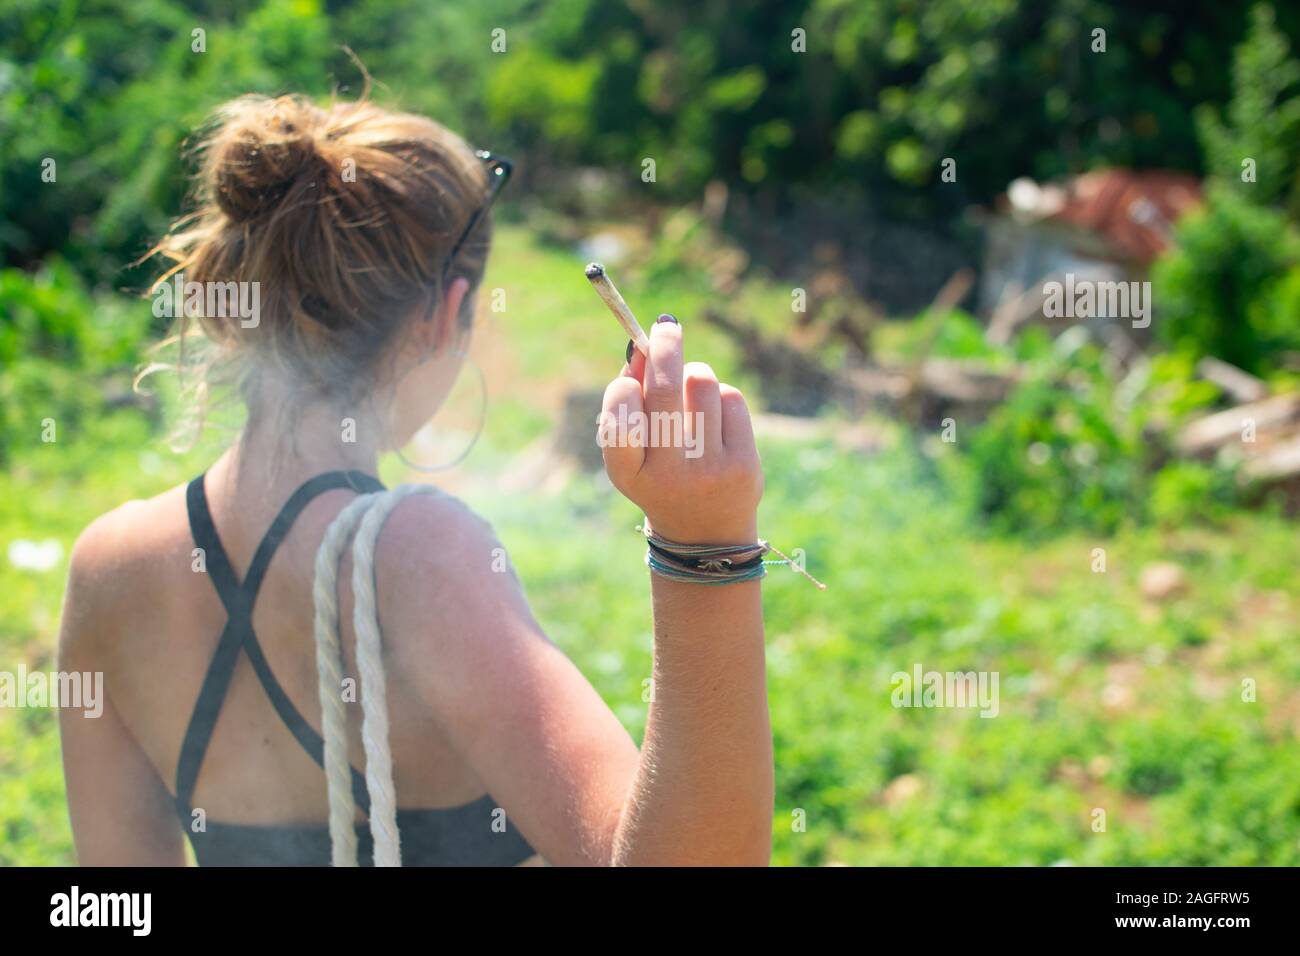 Frau, die ein Marihuana-Joint raucht, von hinten erschossen Stockfoto